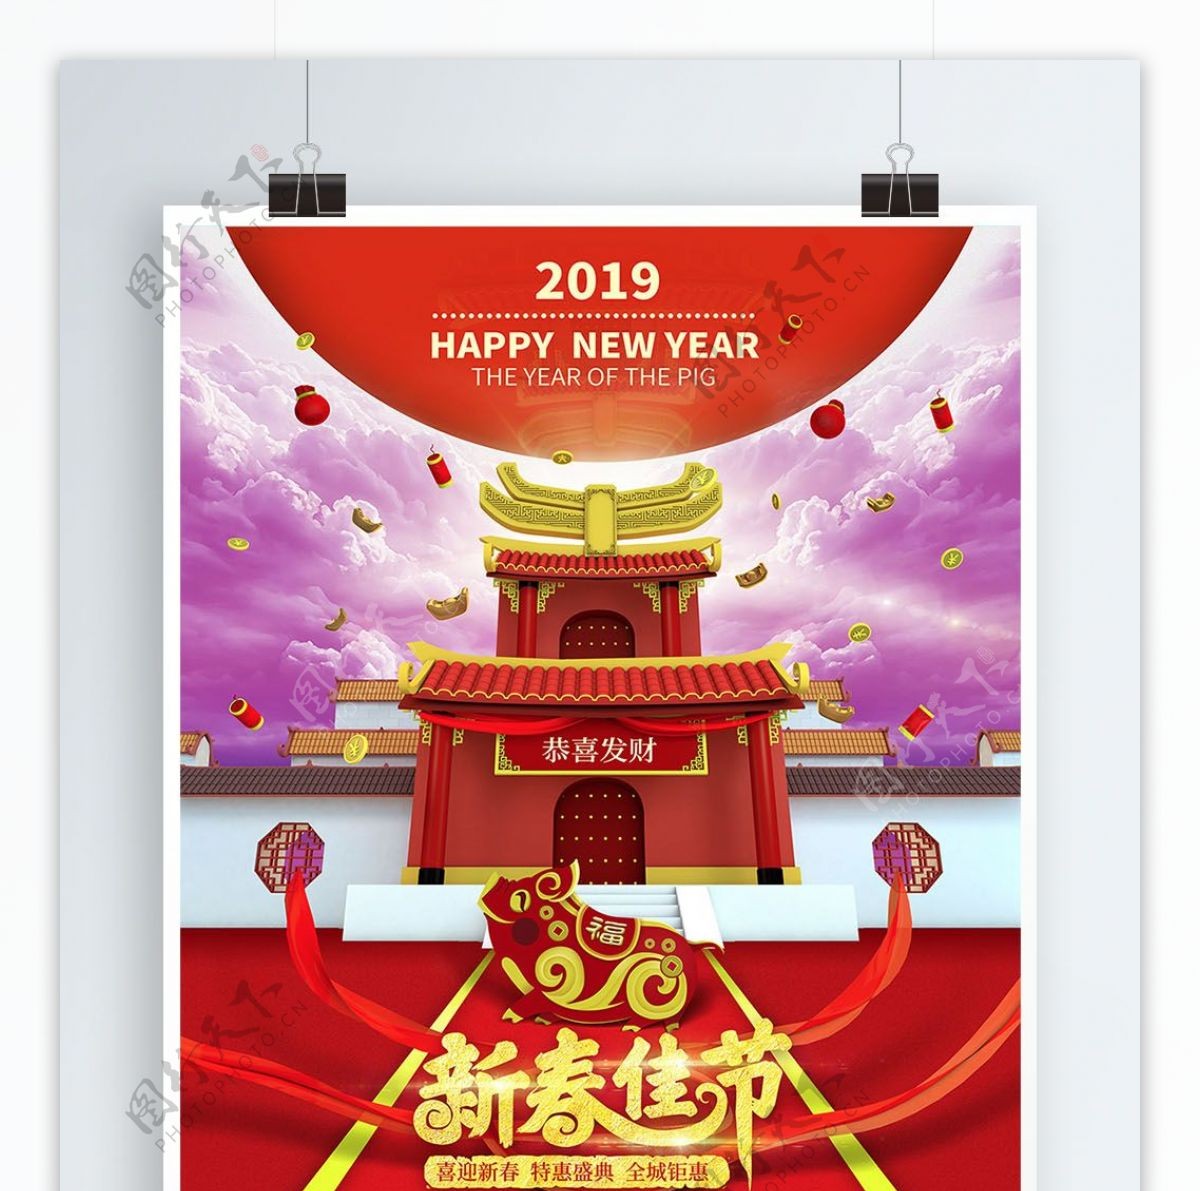 原创2019新年恭喜发财海报